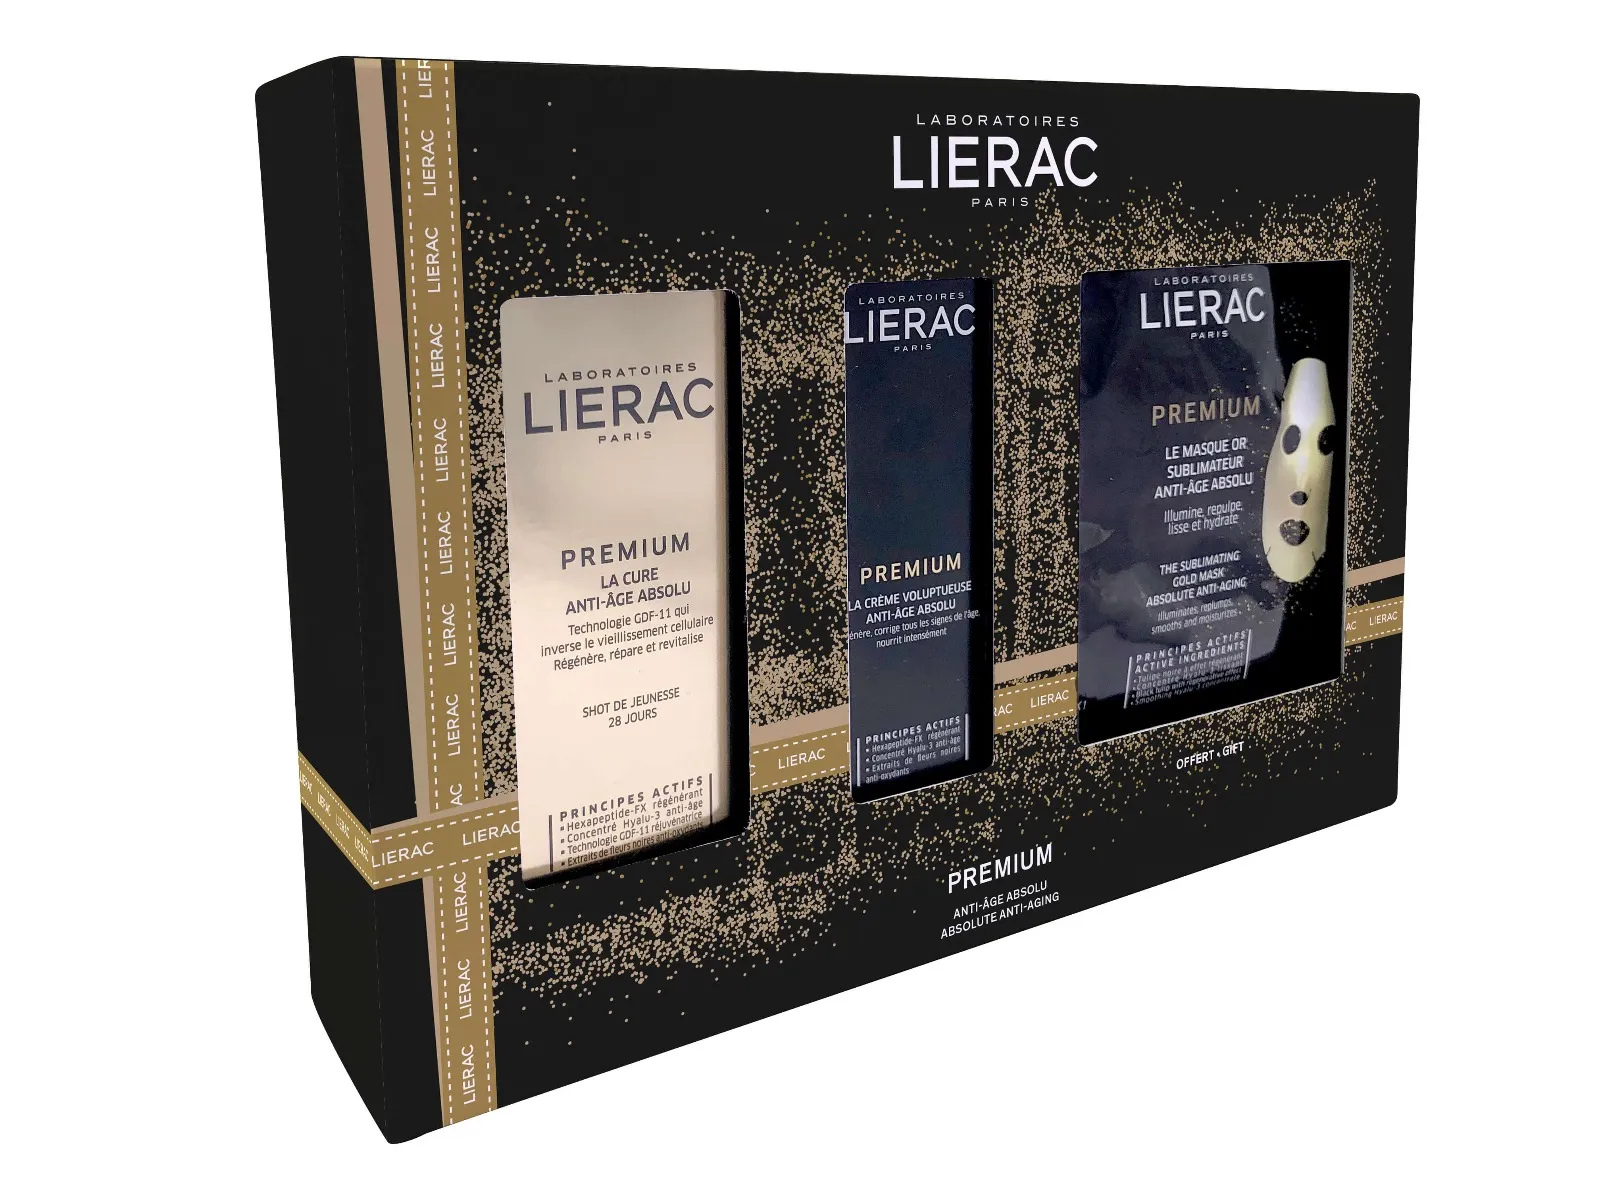 Zestaw Lierac Premium, kuracja uderzeniowa dawka młodości, 30 ml + krem odżywczy przeciwstarzeniowy, 50 ml +  złota maska anti-aging, 20ml